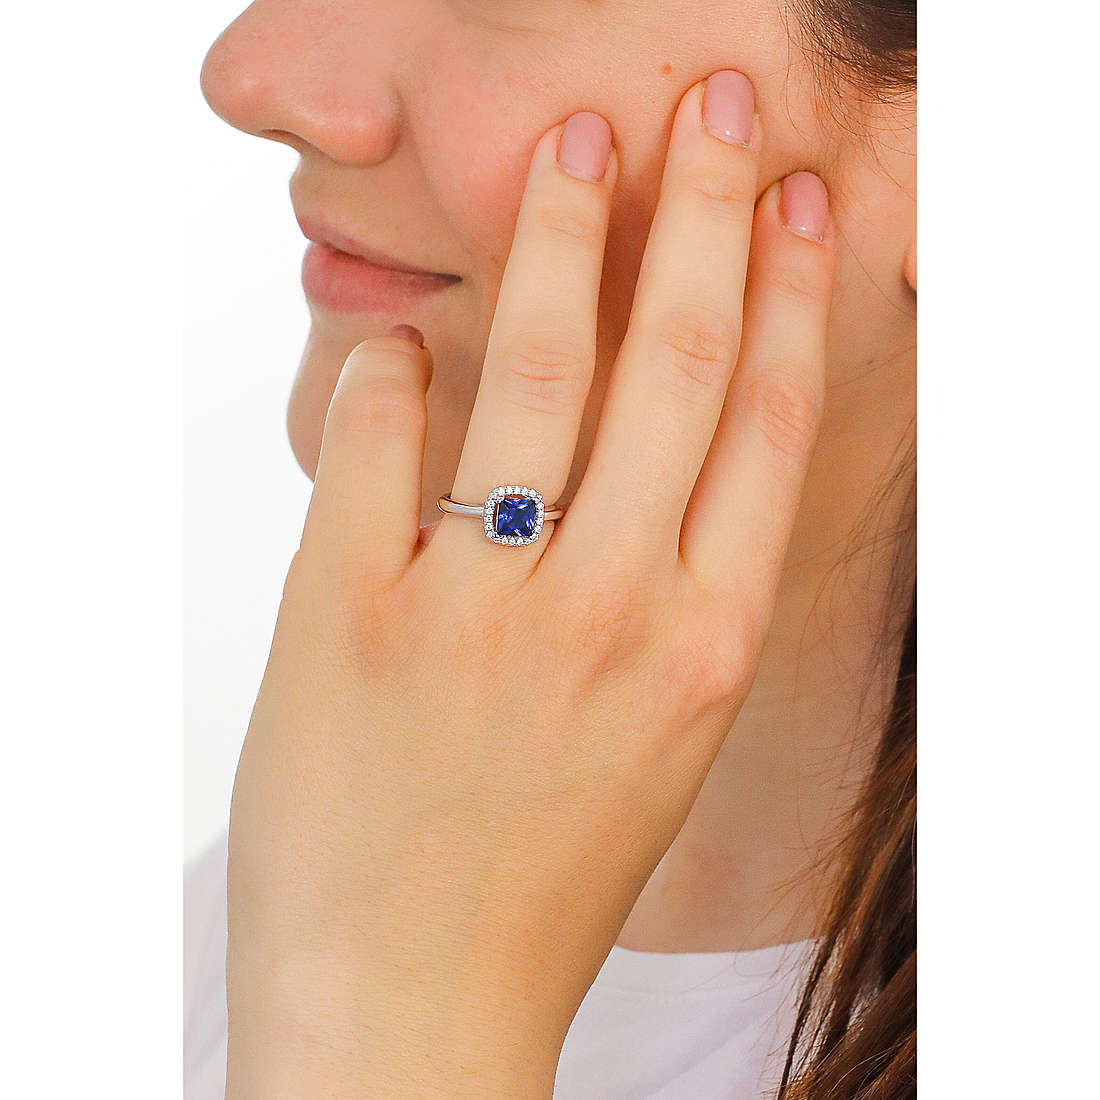 Mabina Gioielli anelli donna 523212 indosso